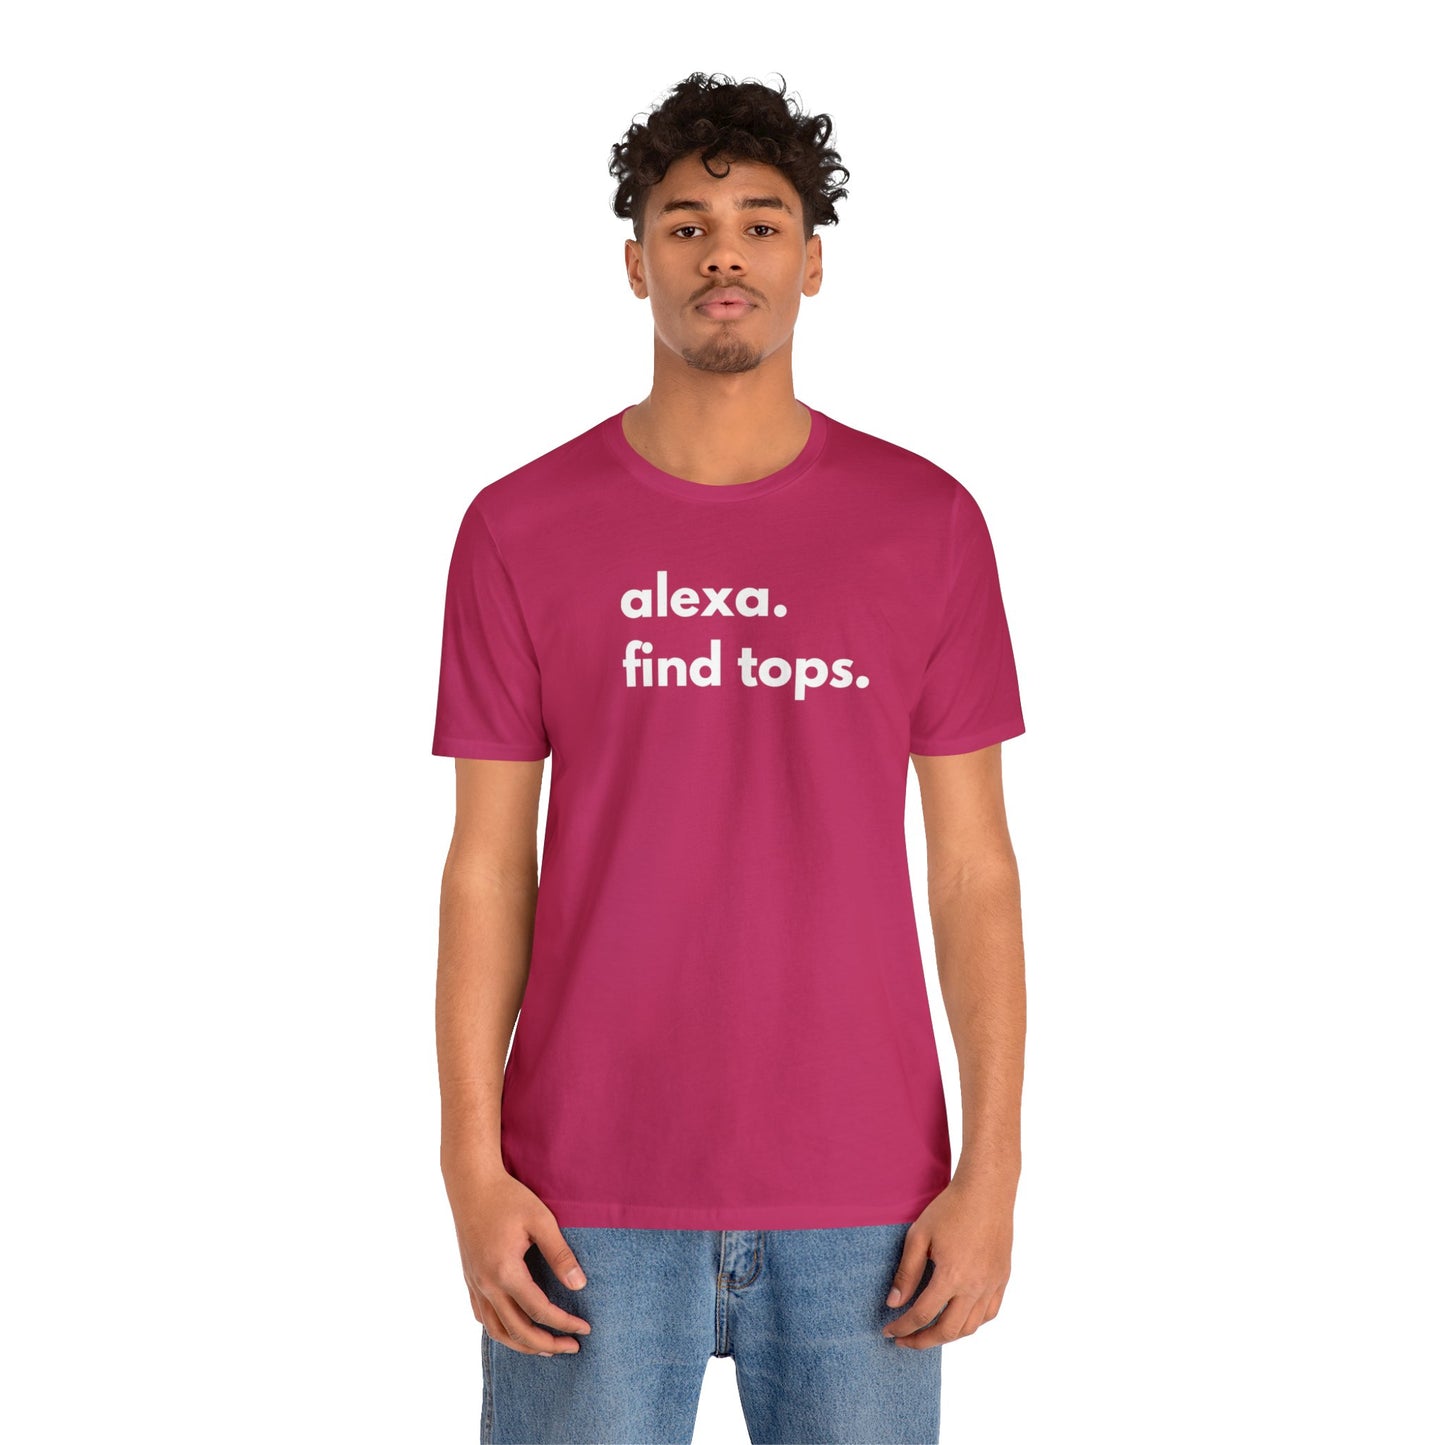 Alexa Find Tops